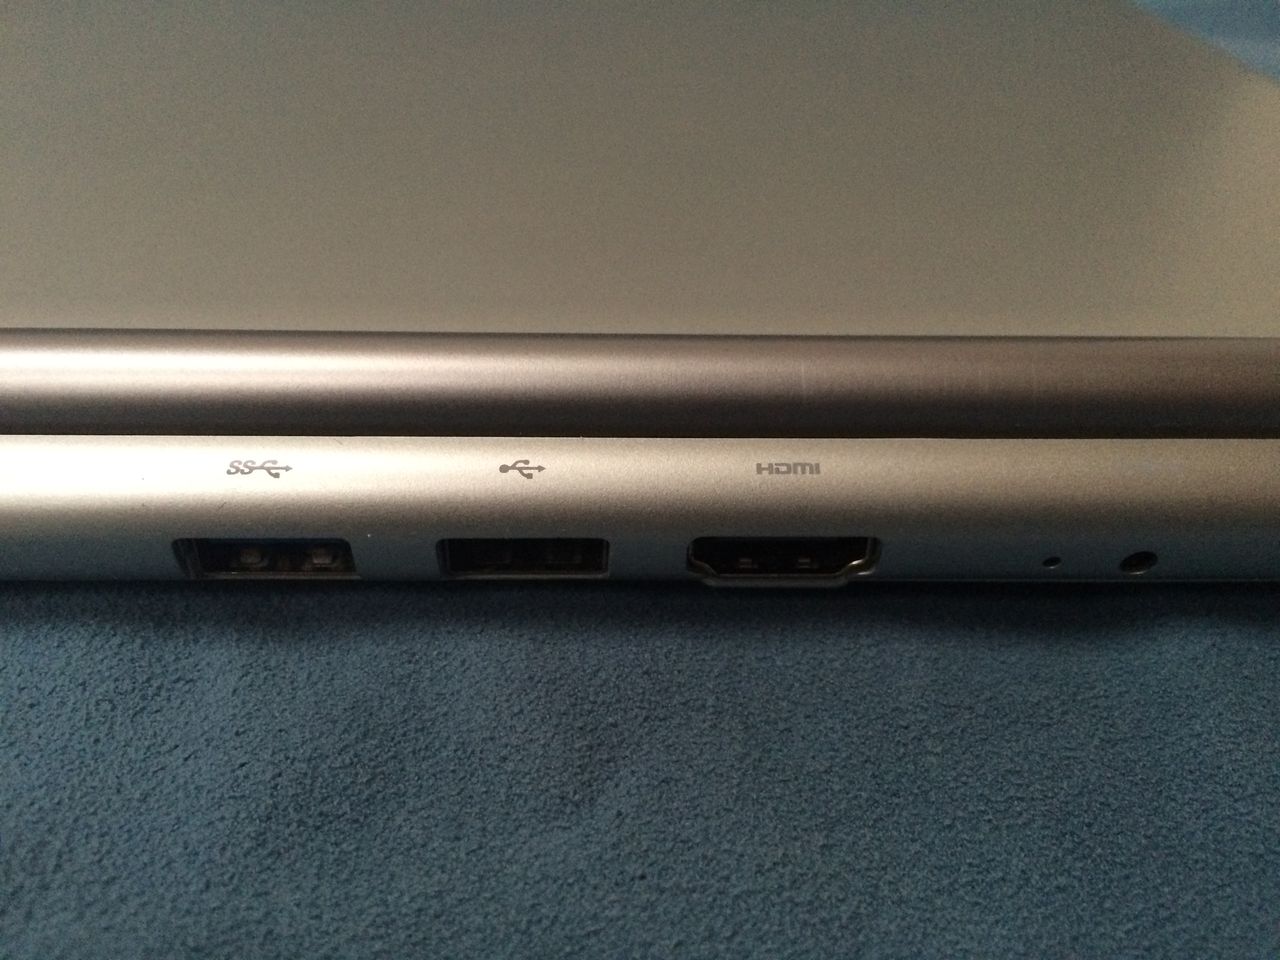 Gniazdo USB 3, gniazdo USB 2 i gniazdo HDMI. Chromebookowi tyle powinno wystarczyć.